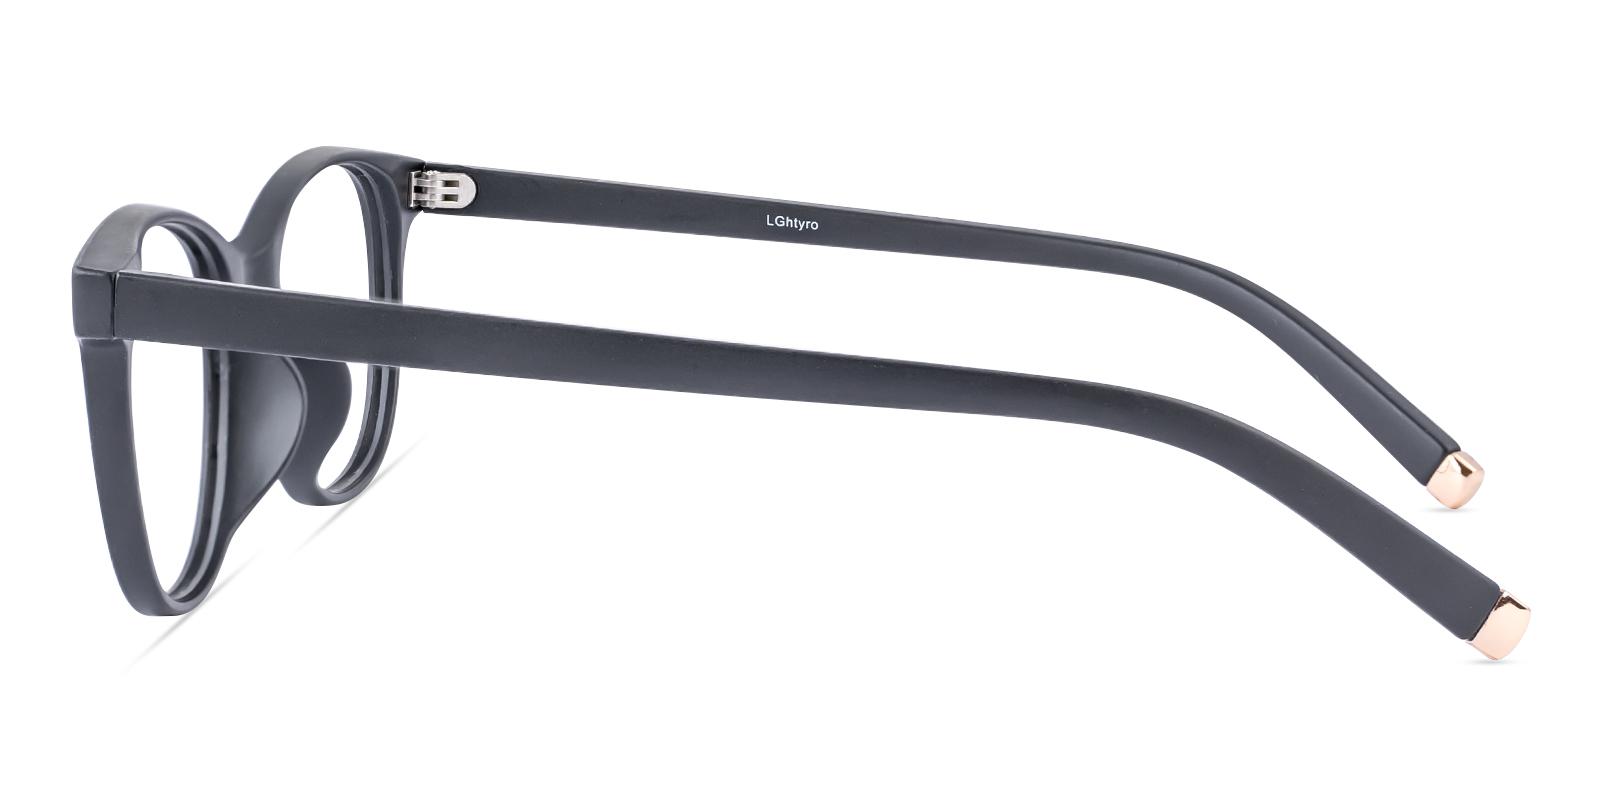 Vesic Matte-black Plastic Eyeglasses , UniversalBridgeFit Frames from ABBE Glasses